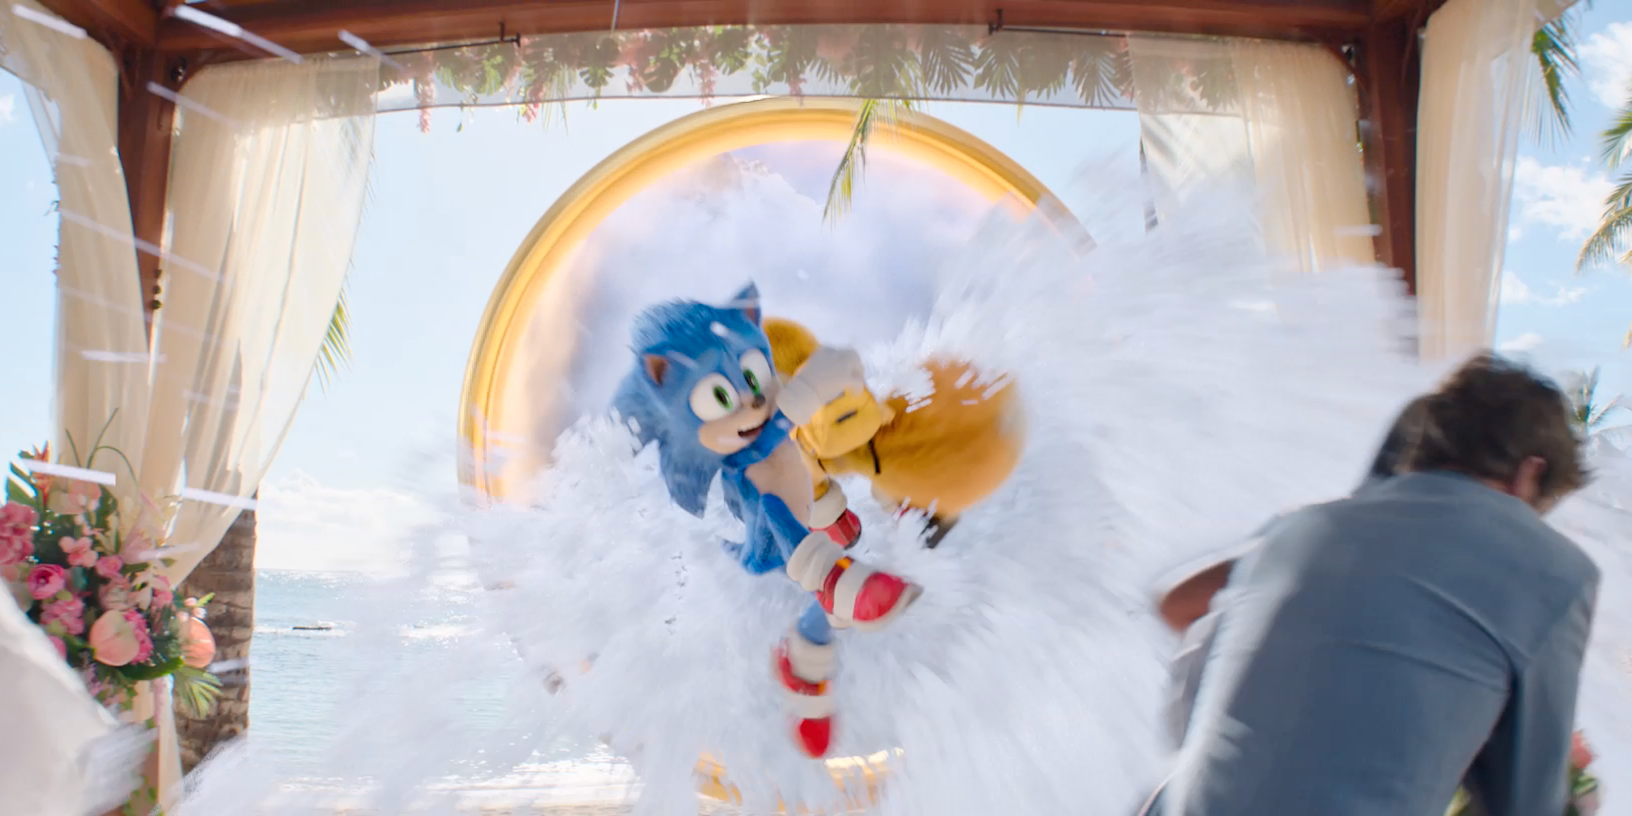 El clip de Sonic the Hedgehog 2 muestra a Sonic y Tails estrellándose en una boda